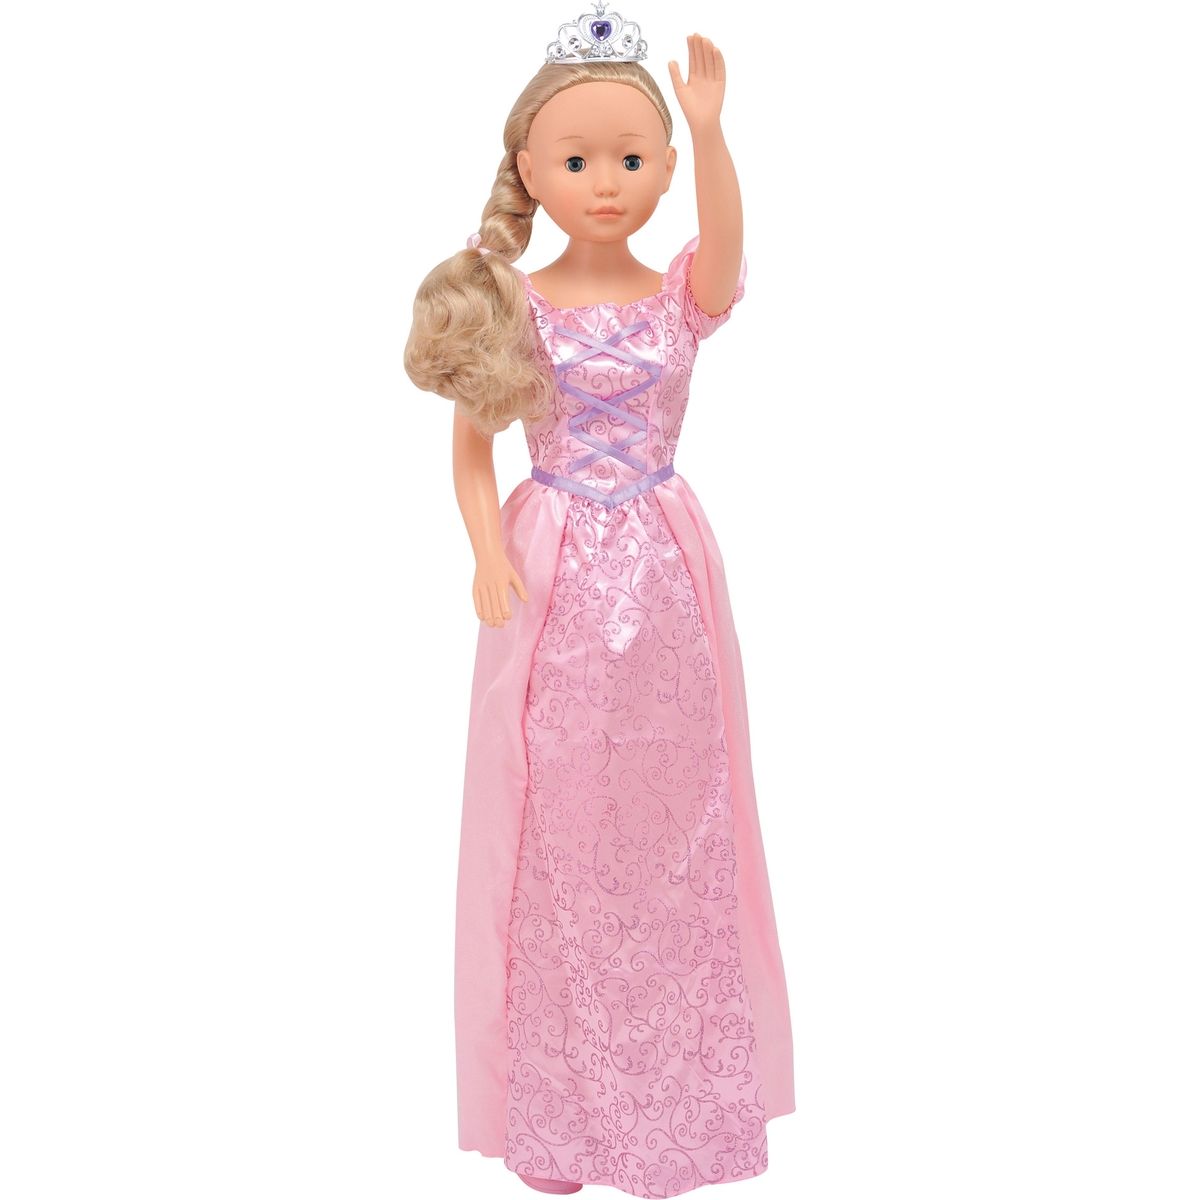 Dimian Panenka Bambolina Molly princezna 90cm - Růžové šaty